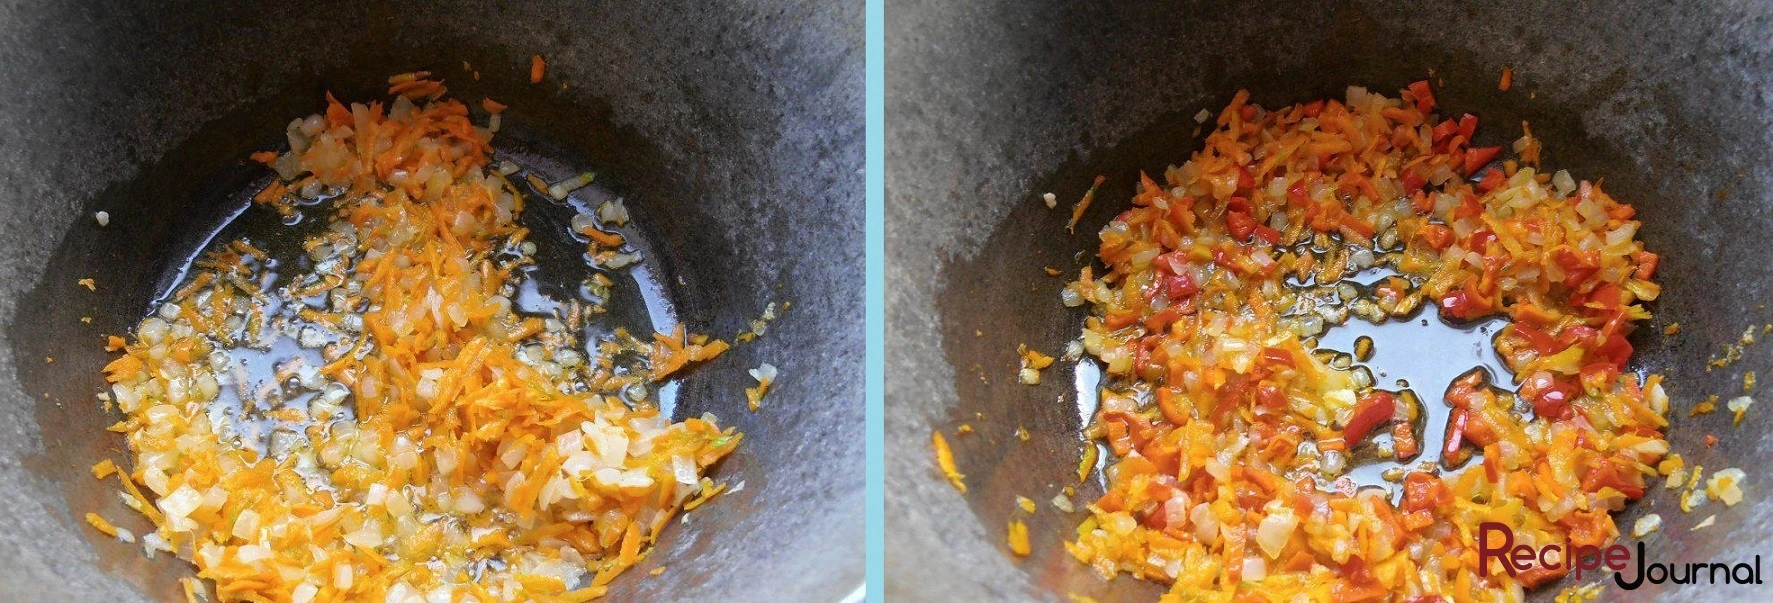 Натрем морковь на крупной терке и добавим к луку. Перемешаем и тушим пару минут. Затем болгарский перец мелко режем и добавляем к овощам. Тушим еще минут 5.